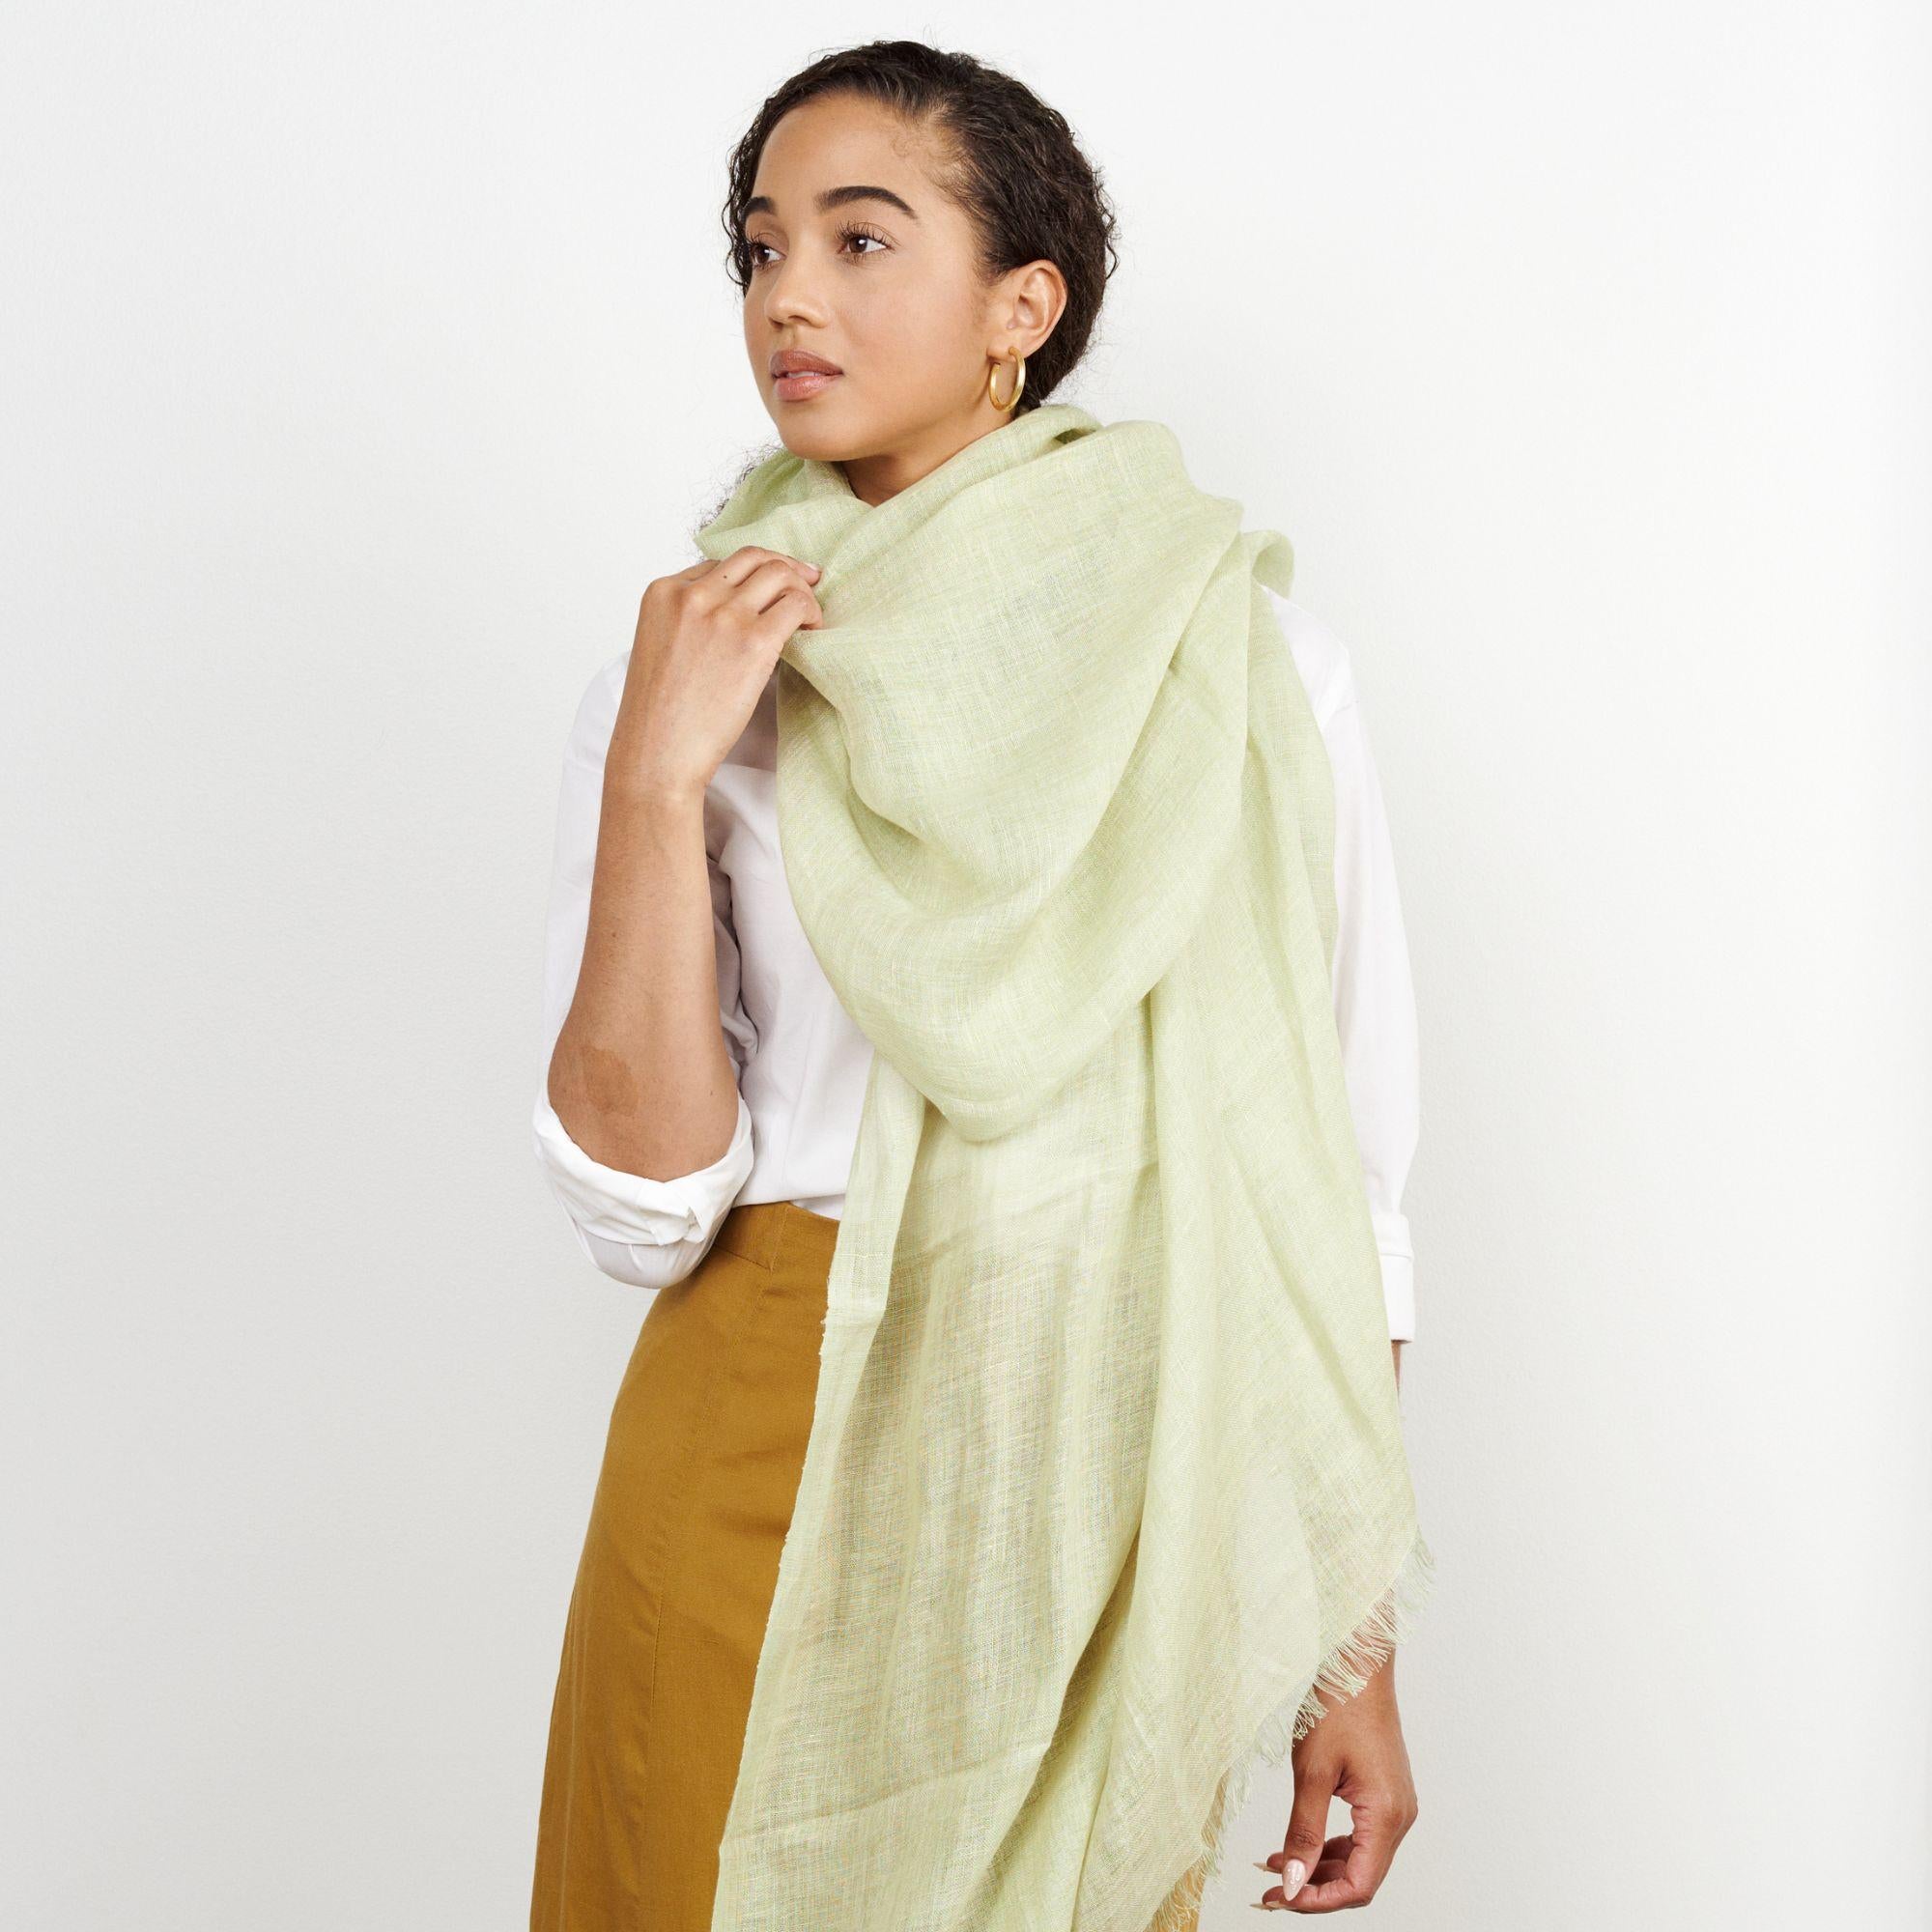 Soya ist ein solider, zeitloser Schal, der ein echter Hingucker ist.  ein nachhaltiges, luxuriöses Schmuckstück und unterstützt zudem ethische Handwerkergemeinschaften. Ein klassisches Unisex-Teil, es  kann das ganze Jahr über getragen werden.